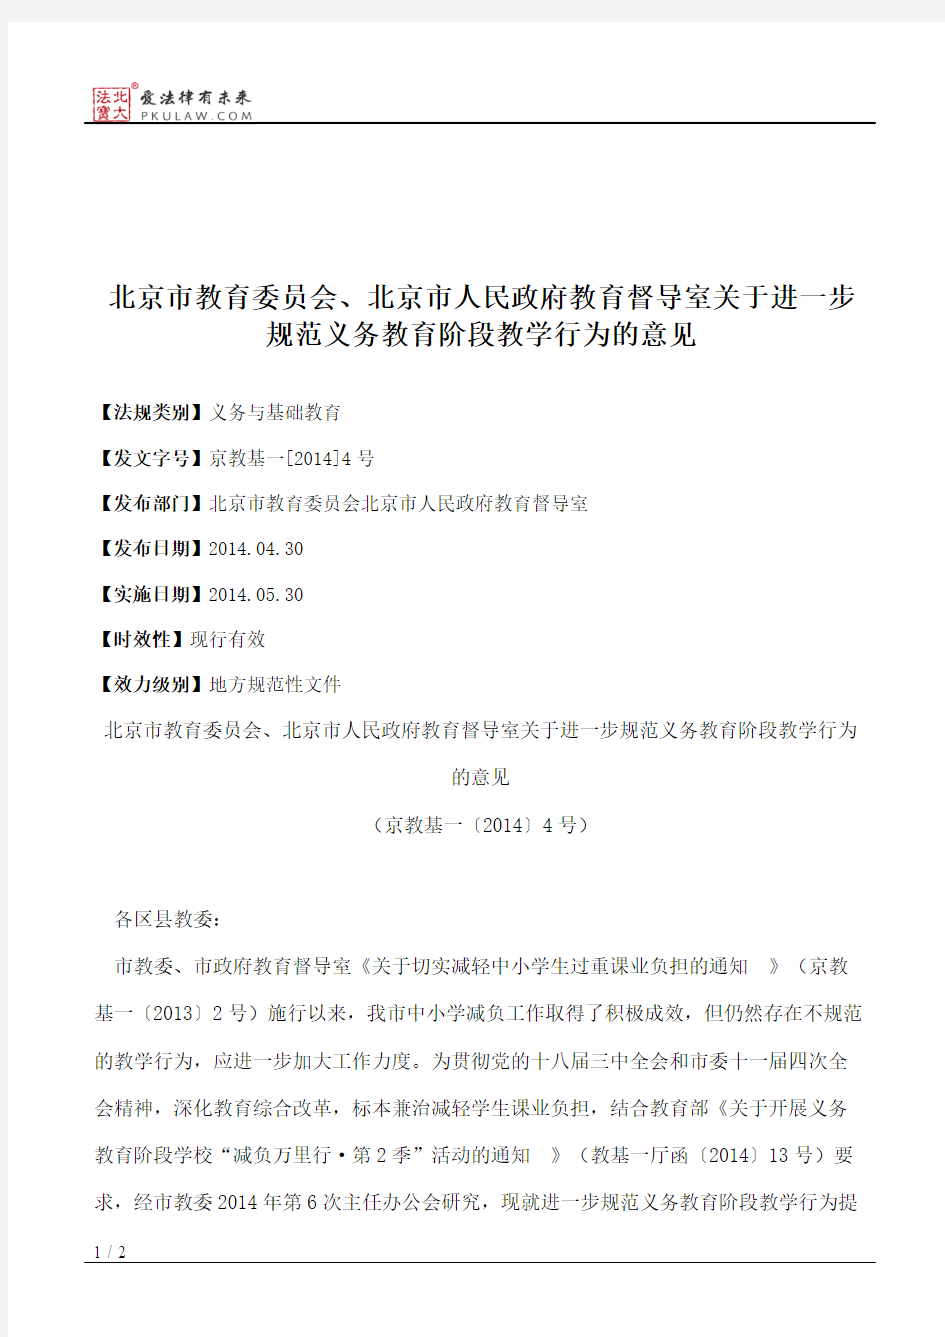 北京市教育委员会、北京市人民政府教育督导室关于进一步规范义务